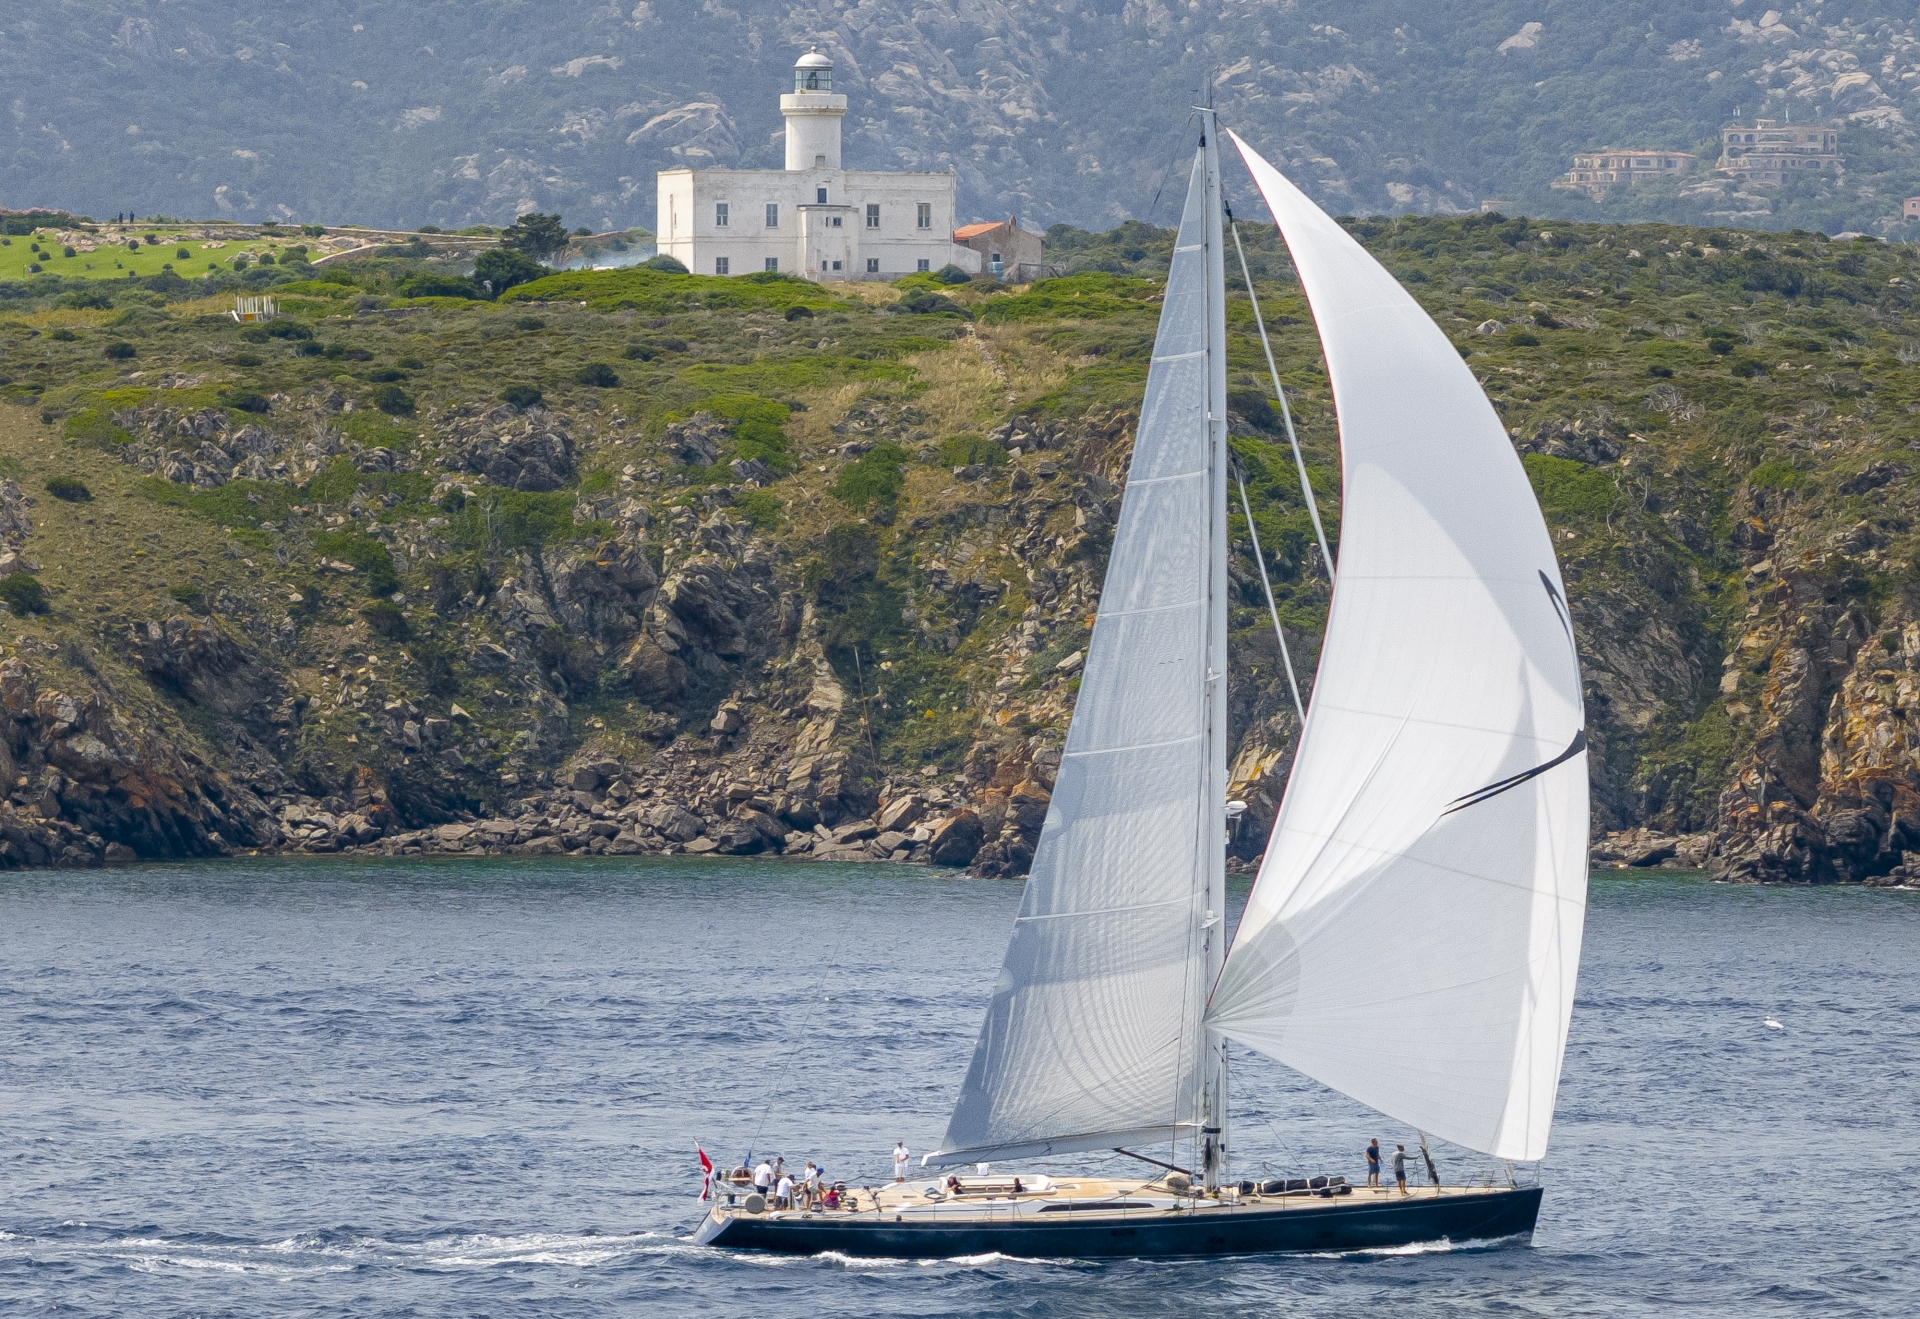 Giorgio Armani Superyacht Regatta, Inoui e V al comando delle rispettive classi - NEWS - Yacht Club Costa Smeralda